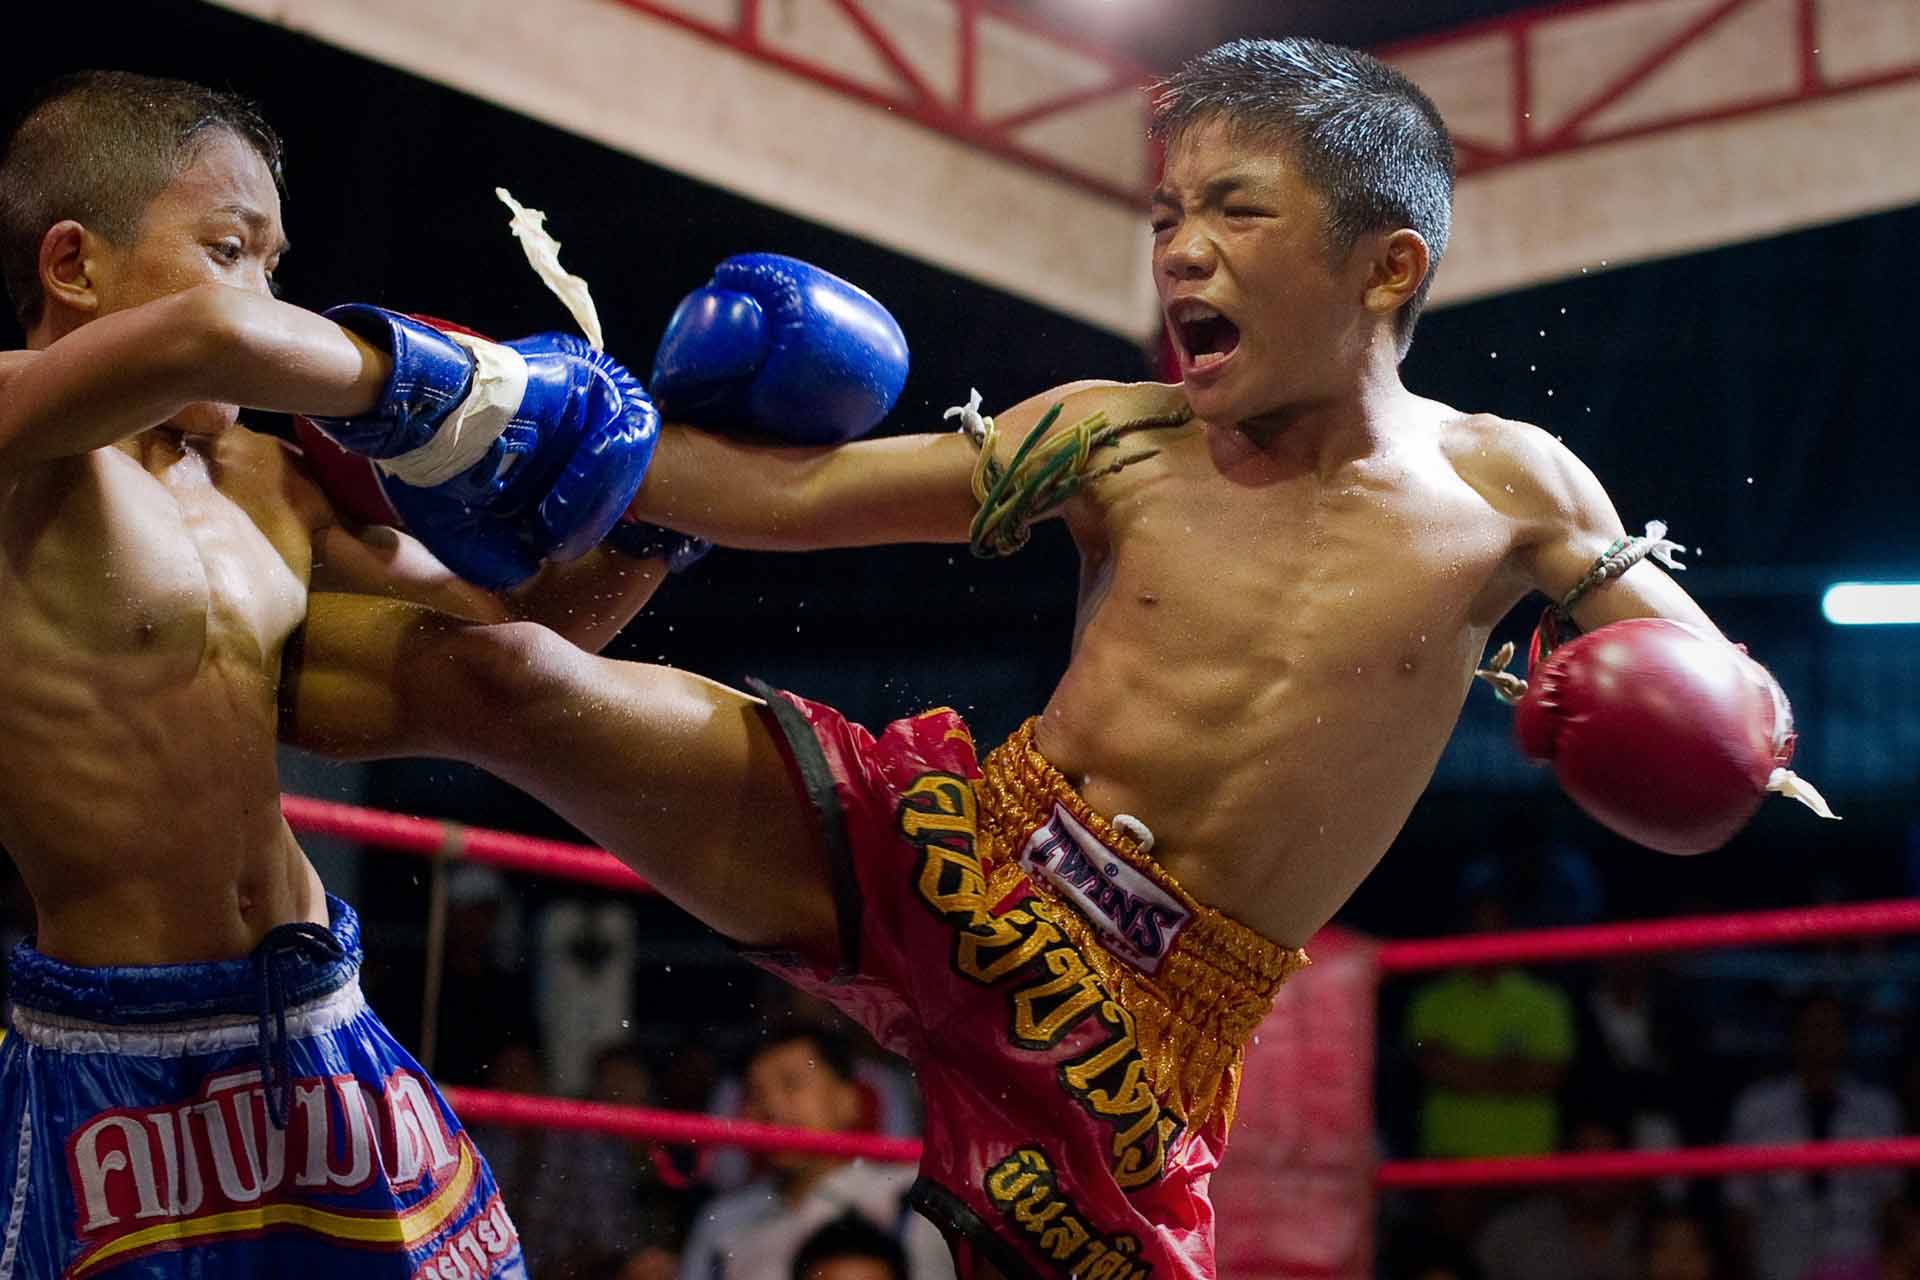 La muerte de un menor en Tailandia reabre el debate sobre el boxeo infantil